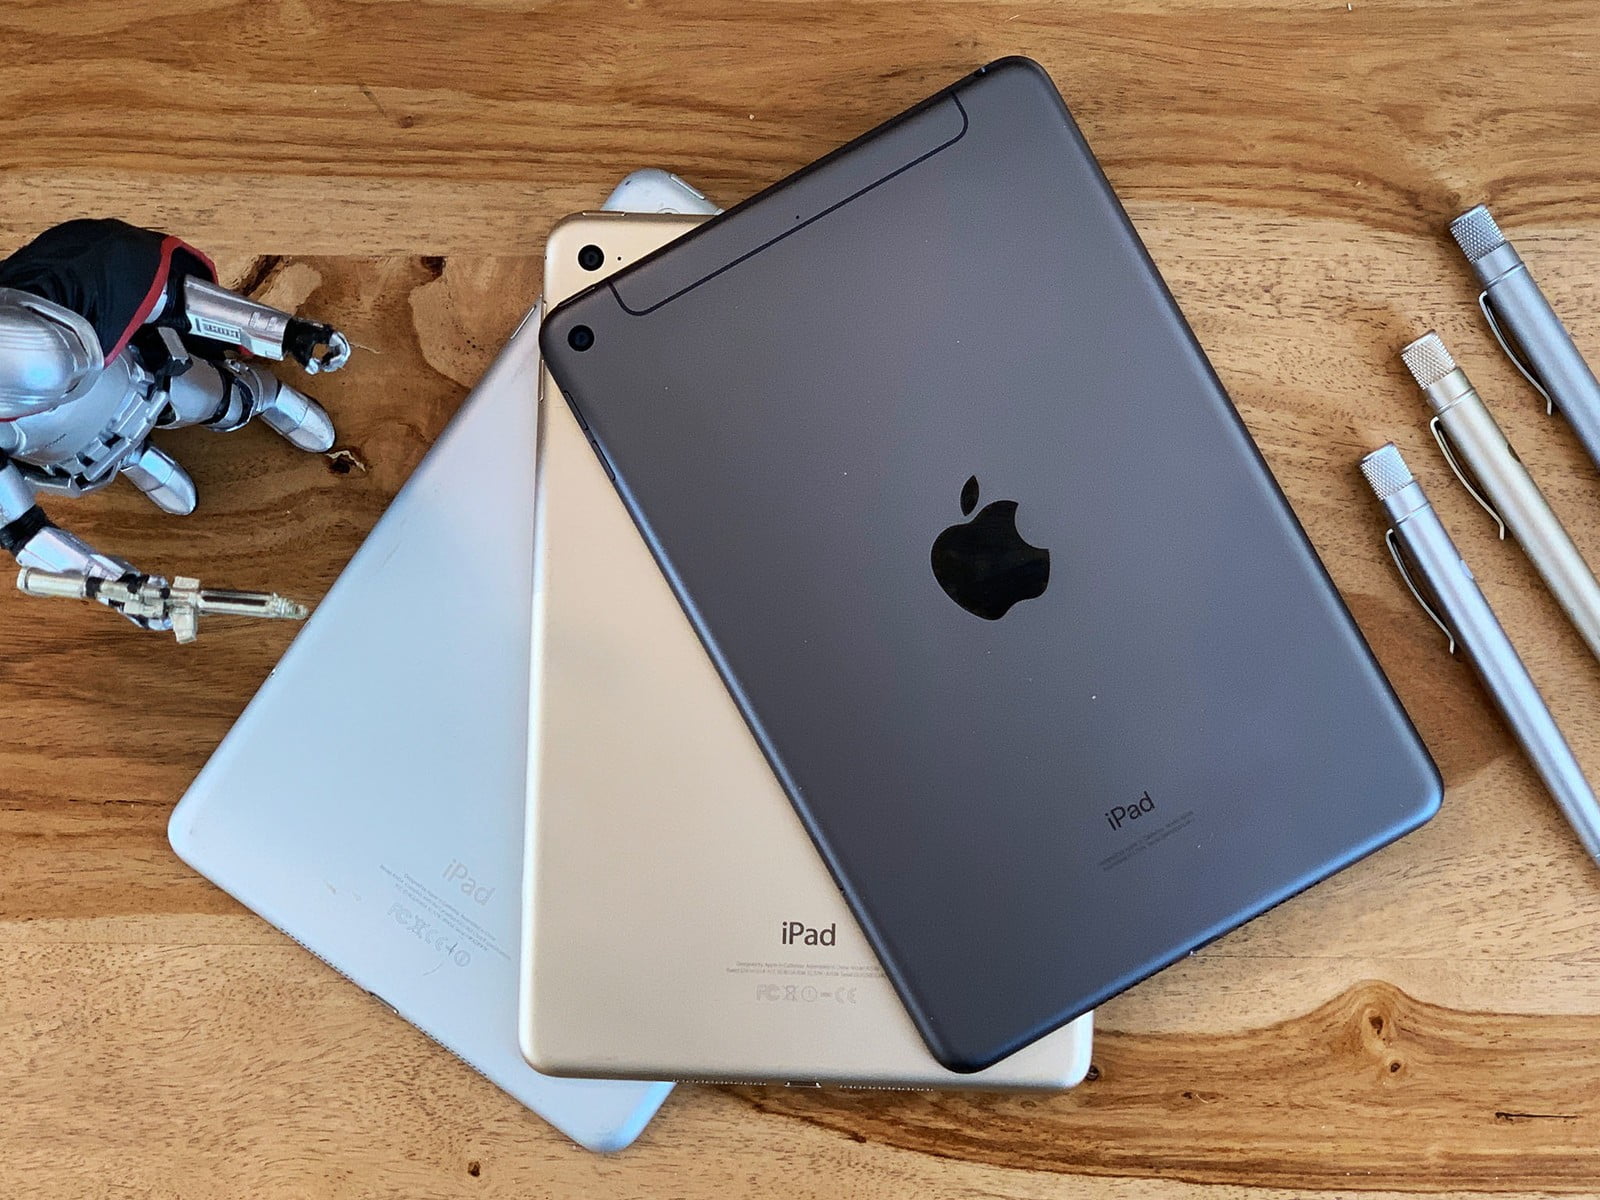 iPad Mini 5 và iPad Air 3 là lựa chọn hoàn hảo trong phân khúc tầm trung